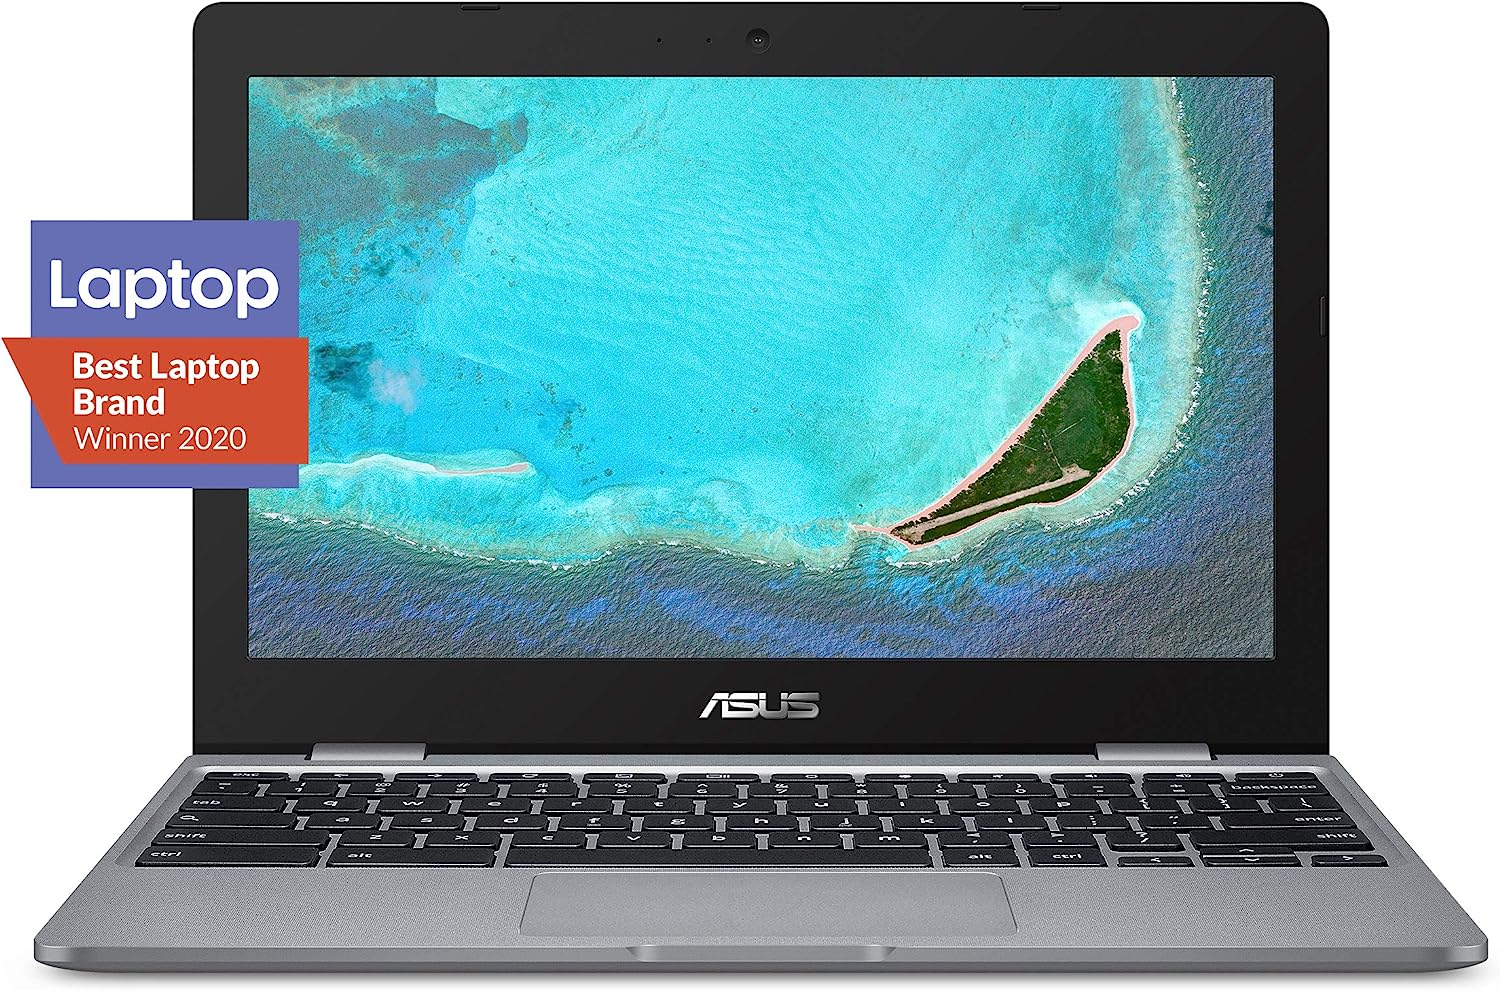 ASUS Chromebook C223 11.6